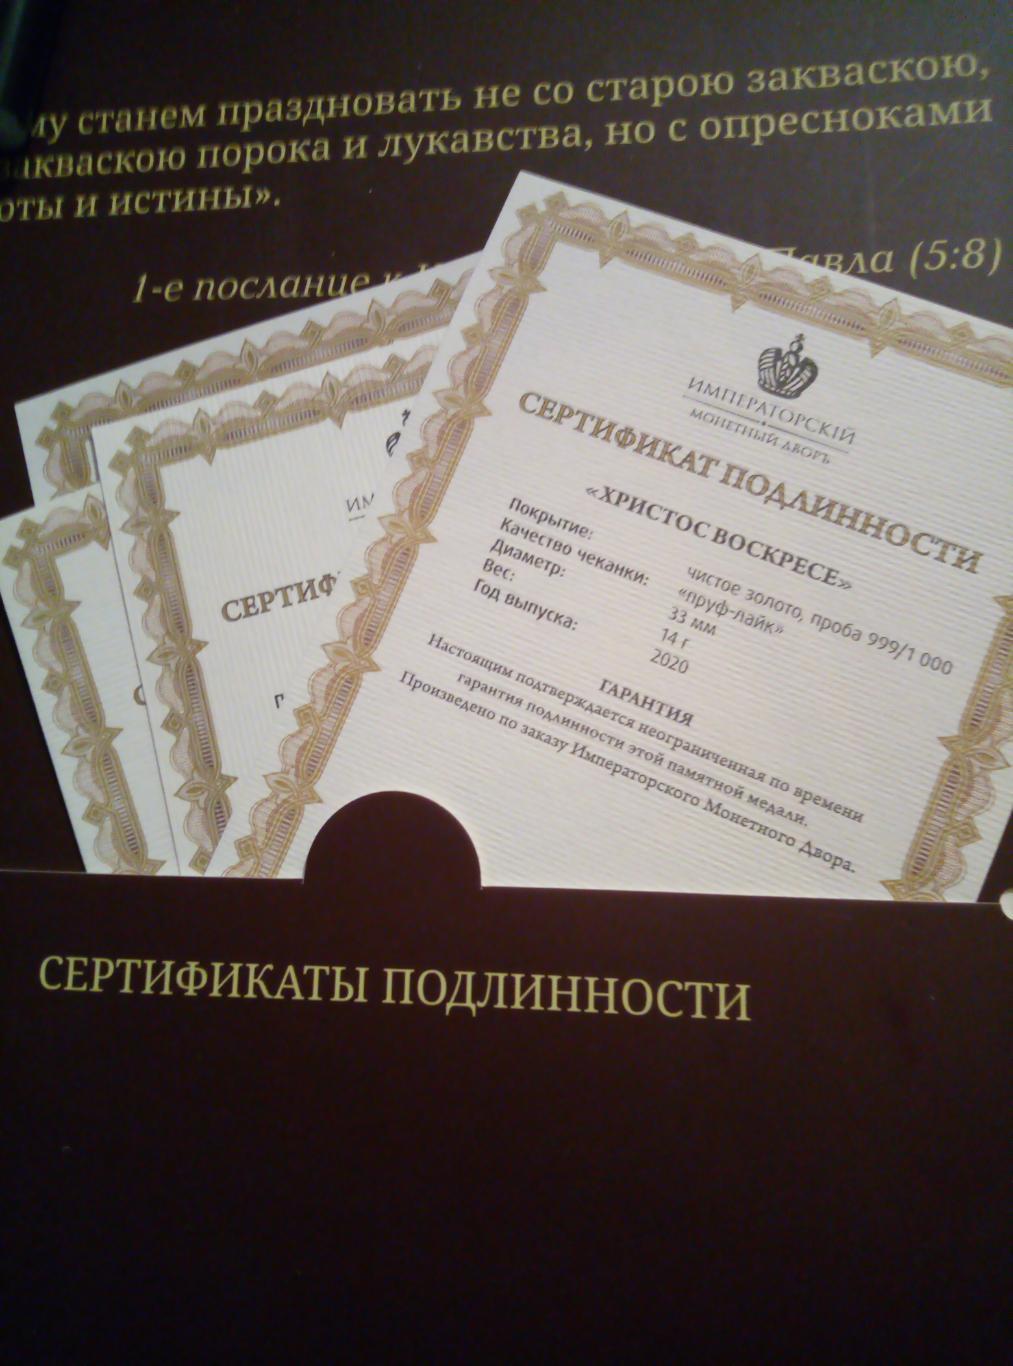 Медаль (памятная) Православные праздники (покрытие золото) см. описание 1